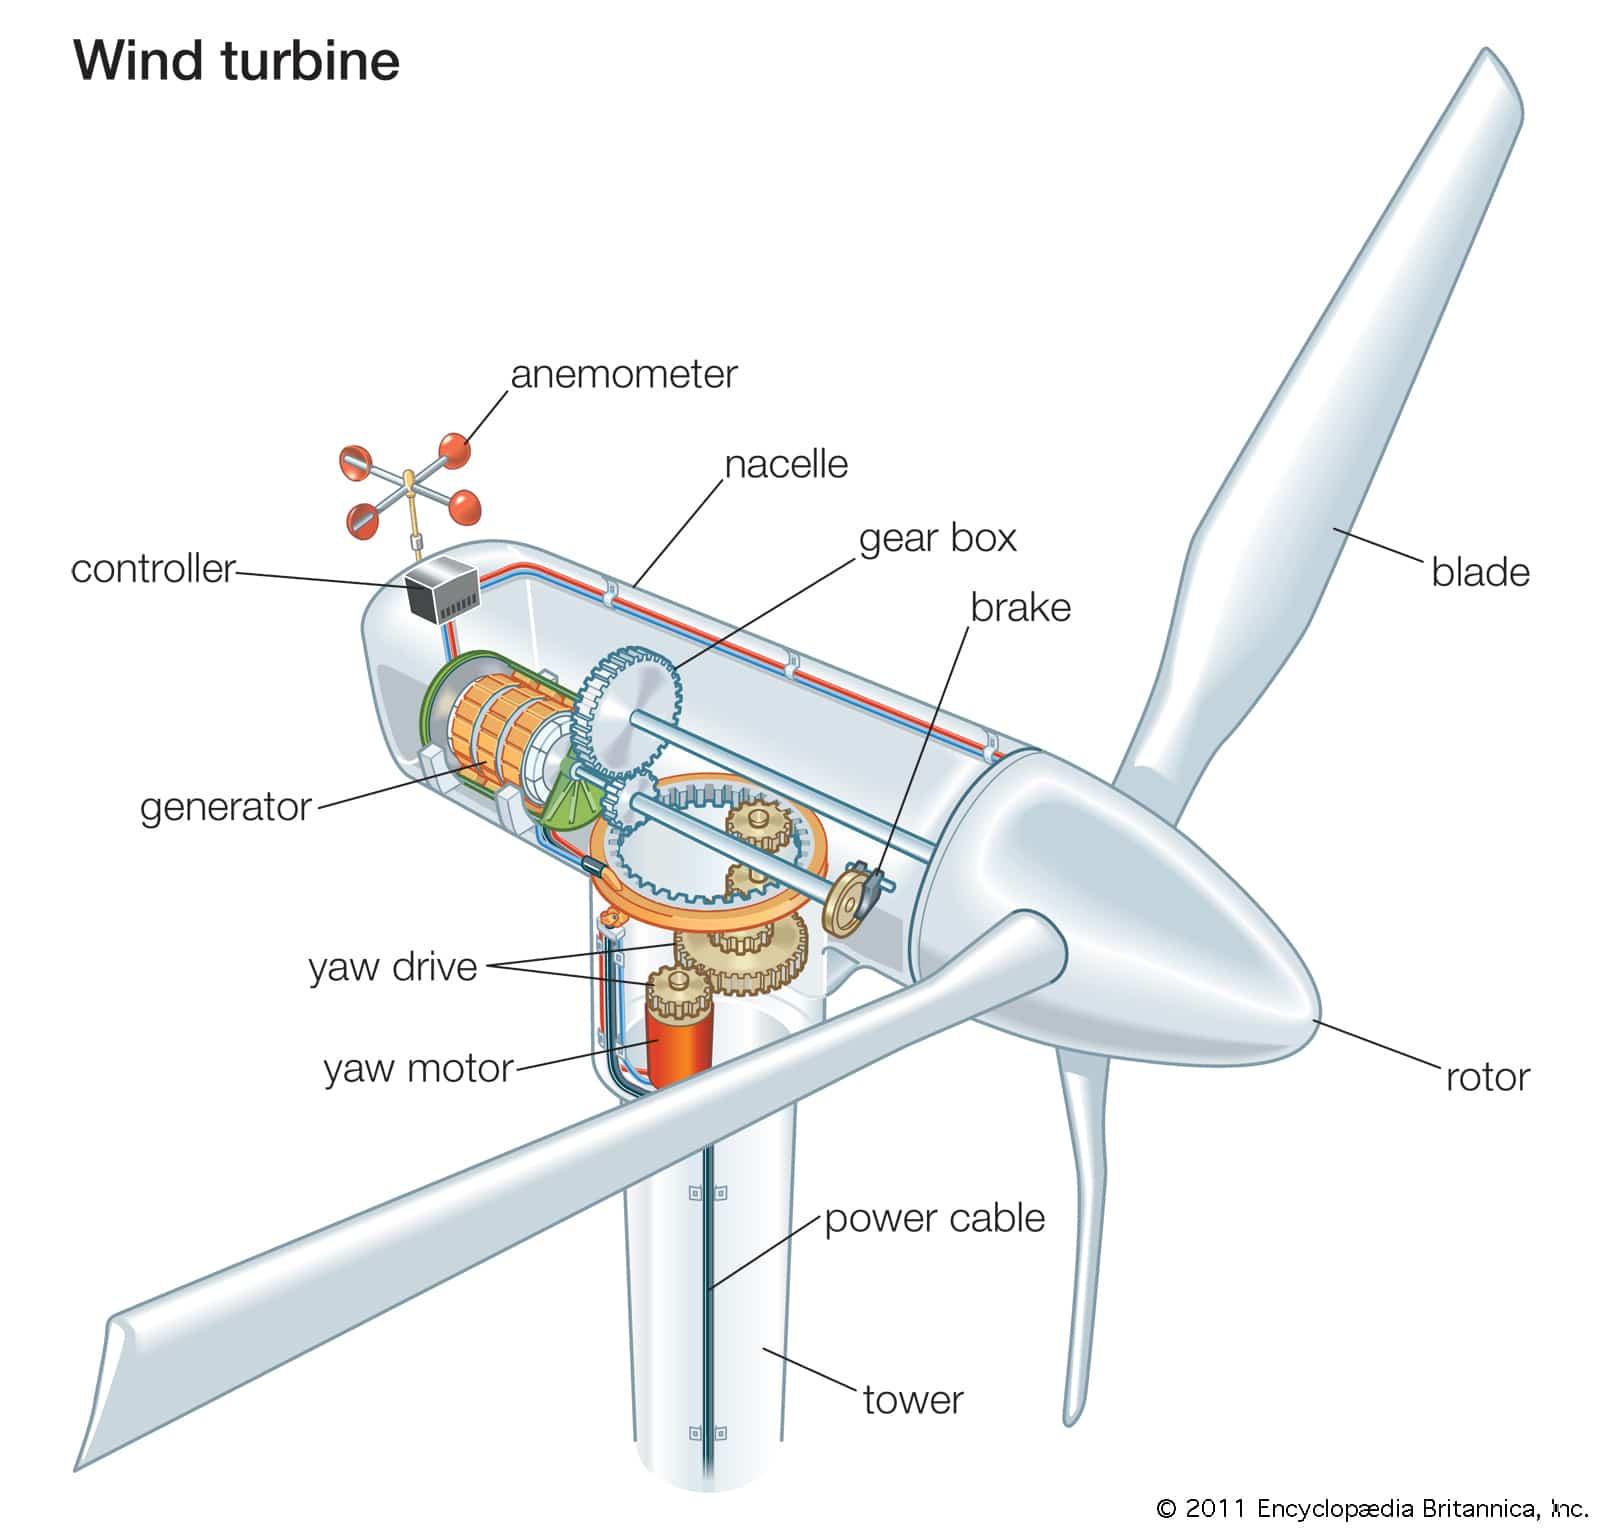 توليد الكهرباء من الرياح